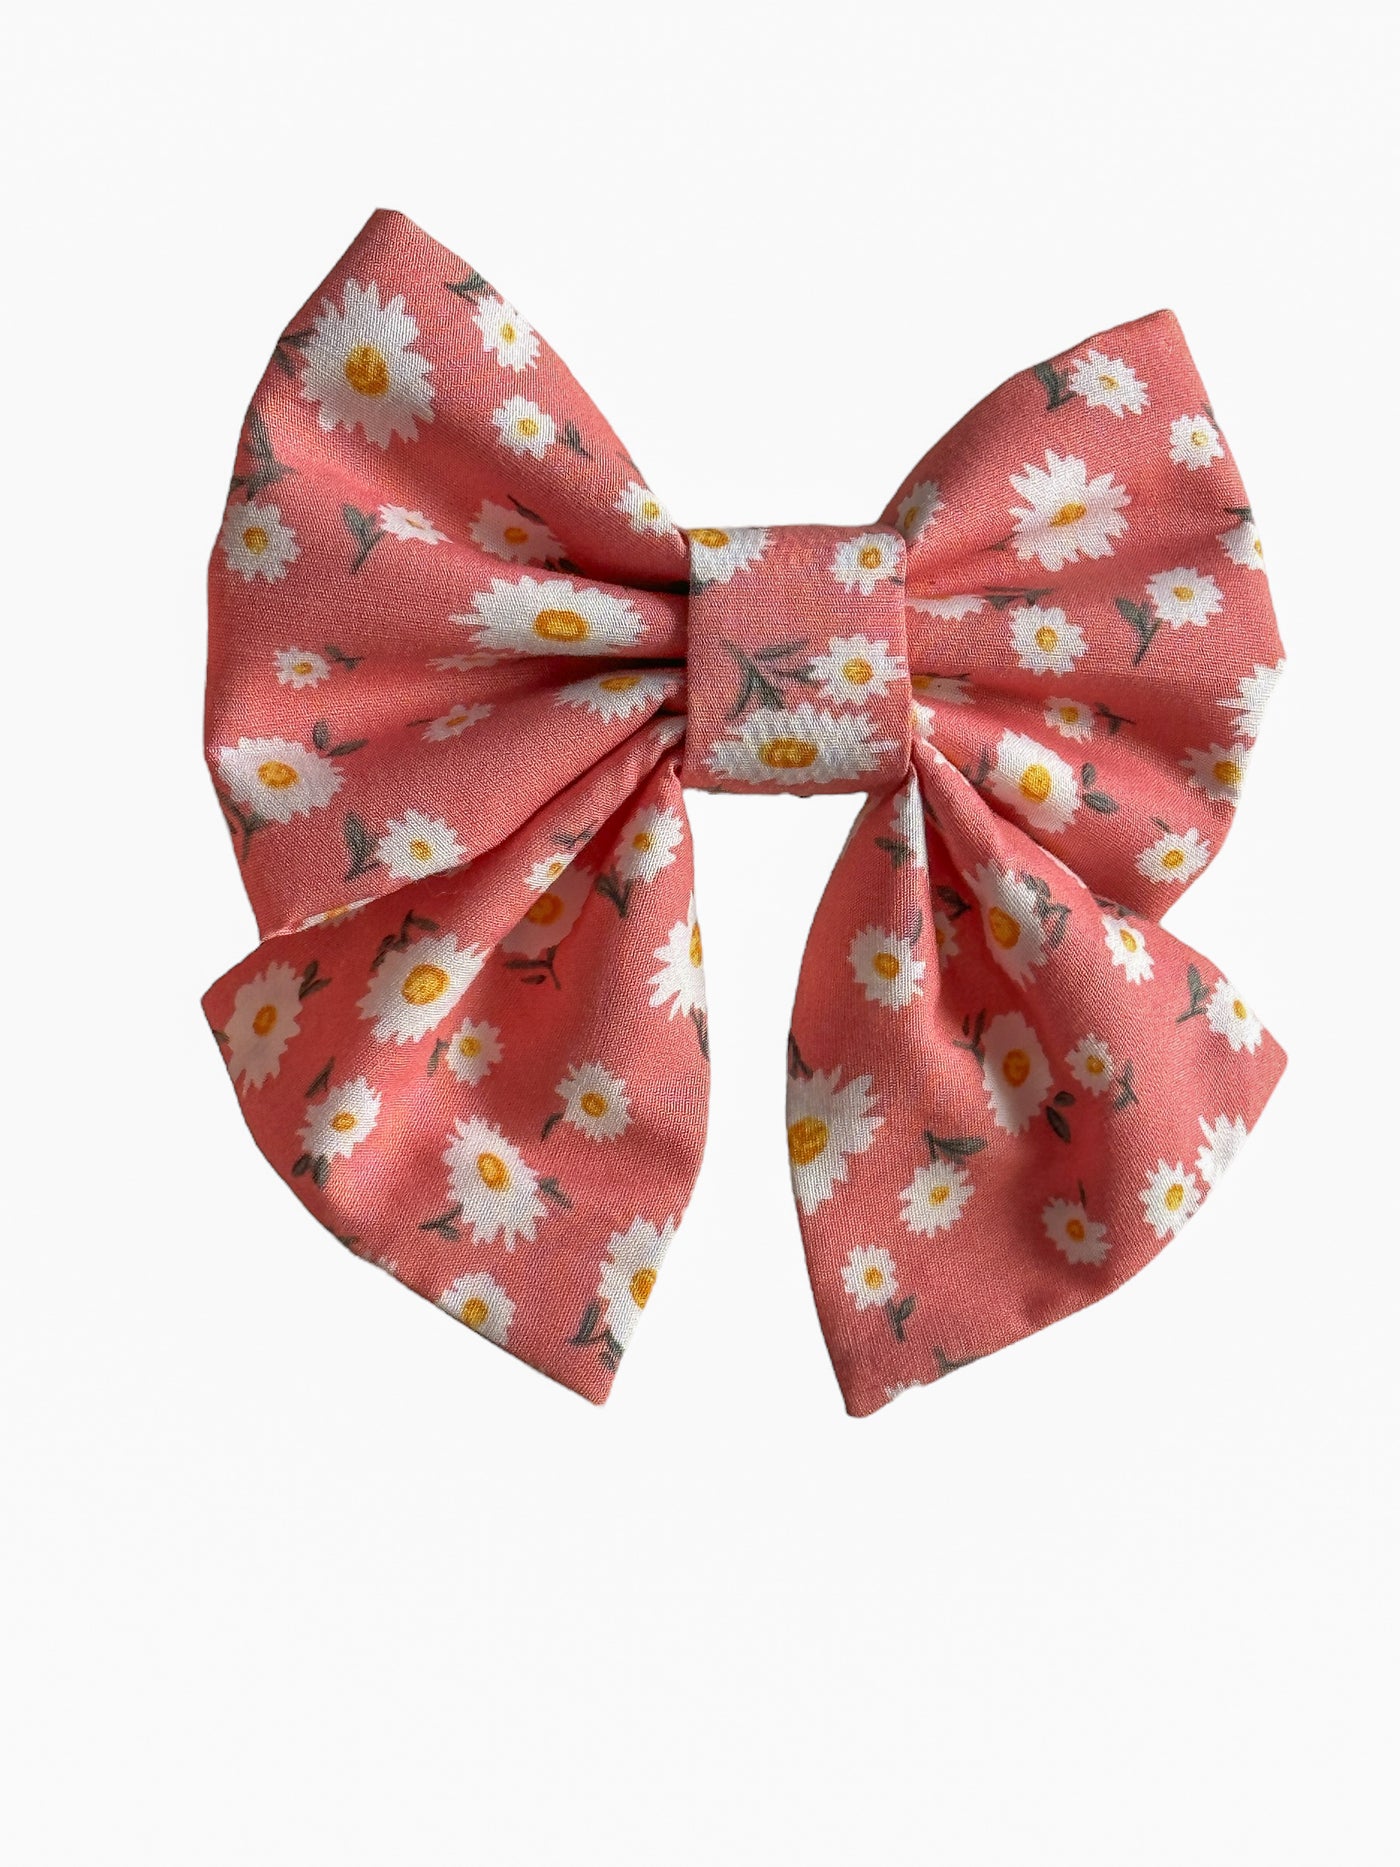 (Copy) (Copy) ) Sailor Bow Tie-Dizzy Dog Collars